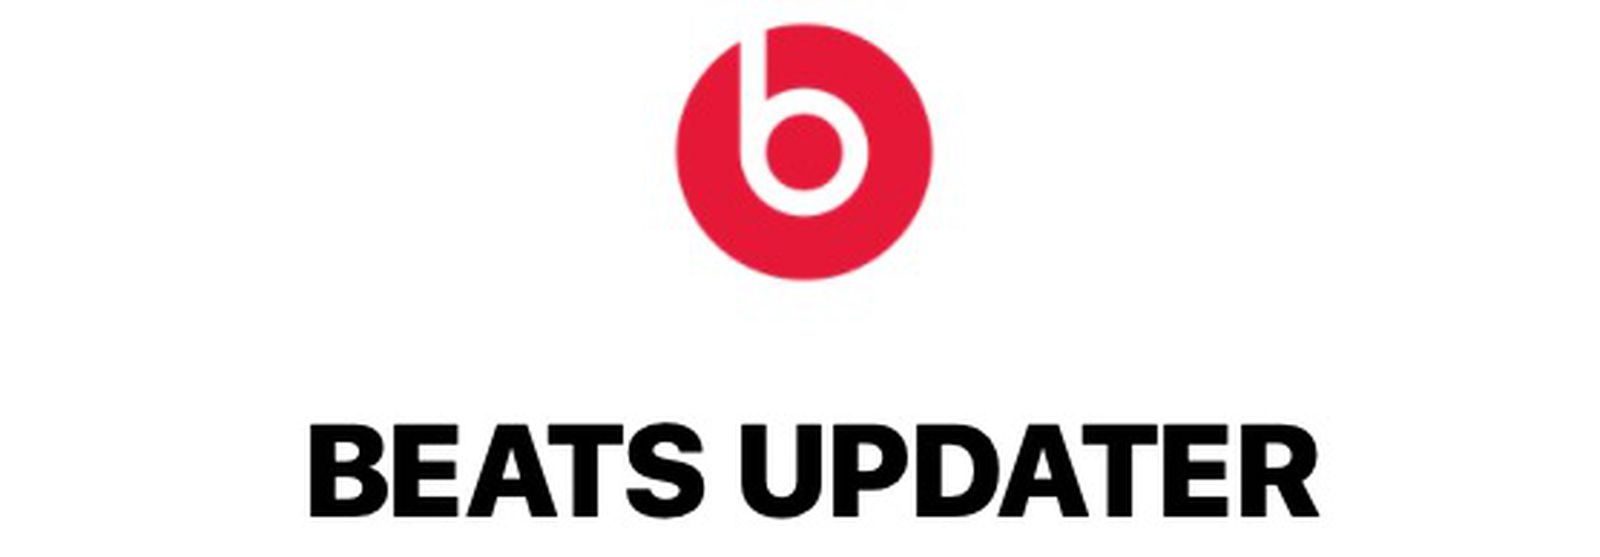 beats updater won t open